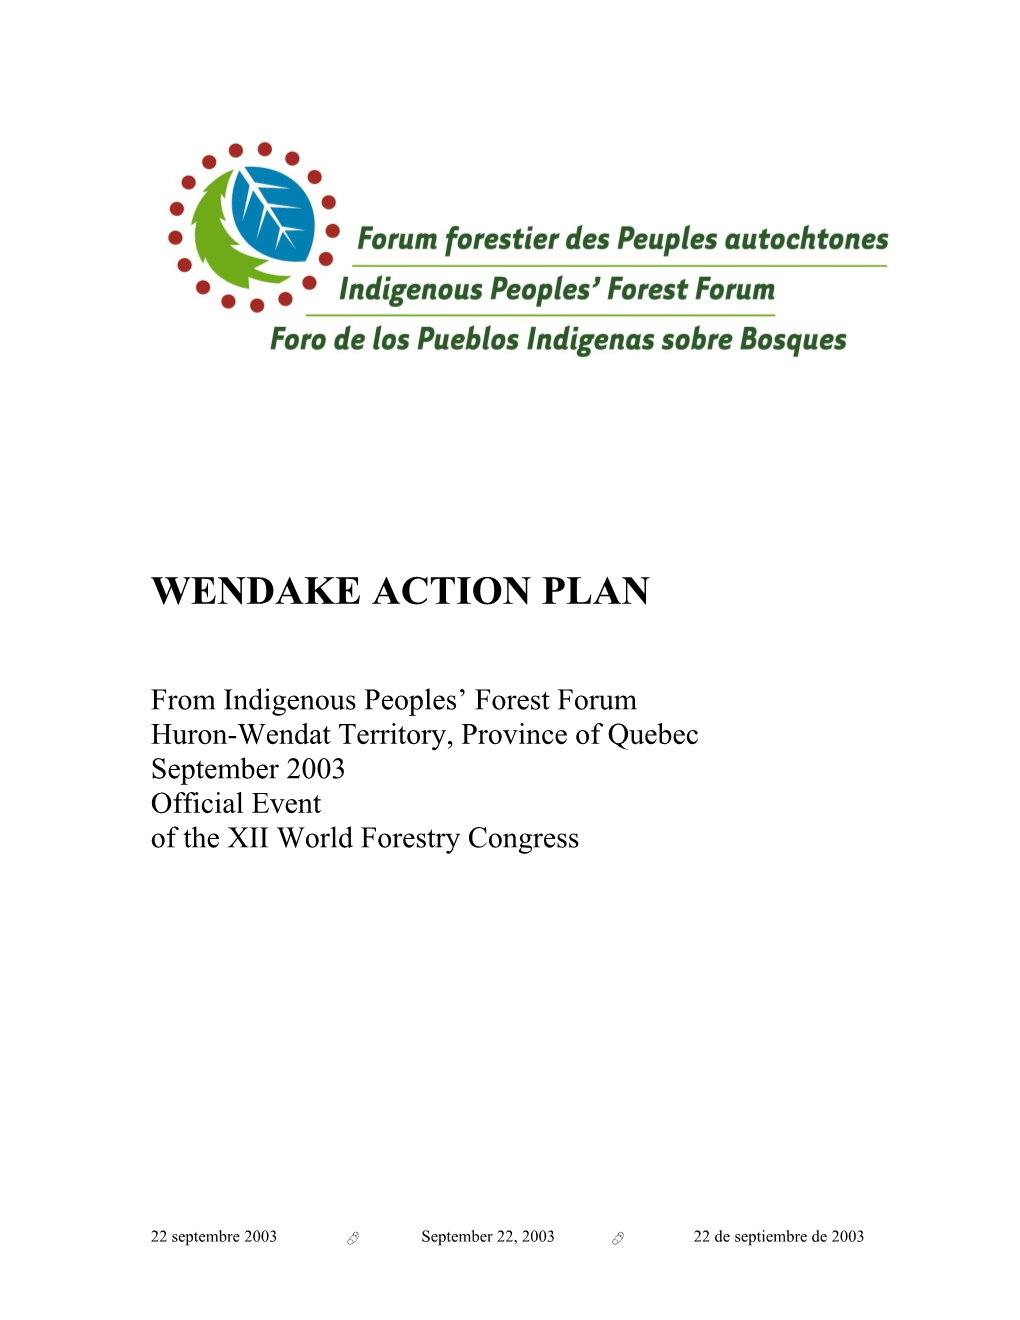 Wendake Action Plan